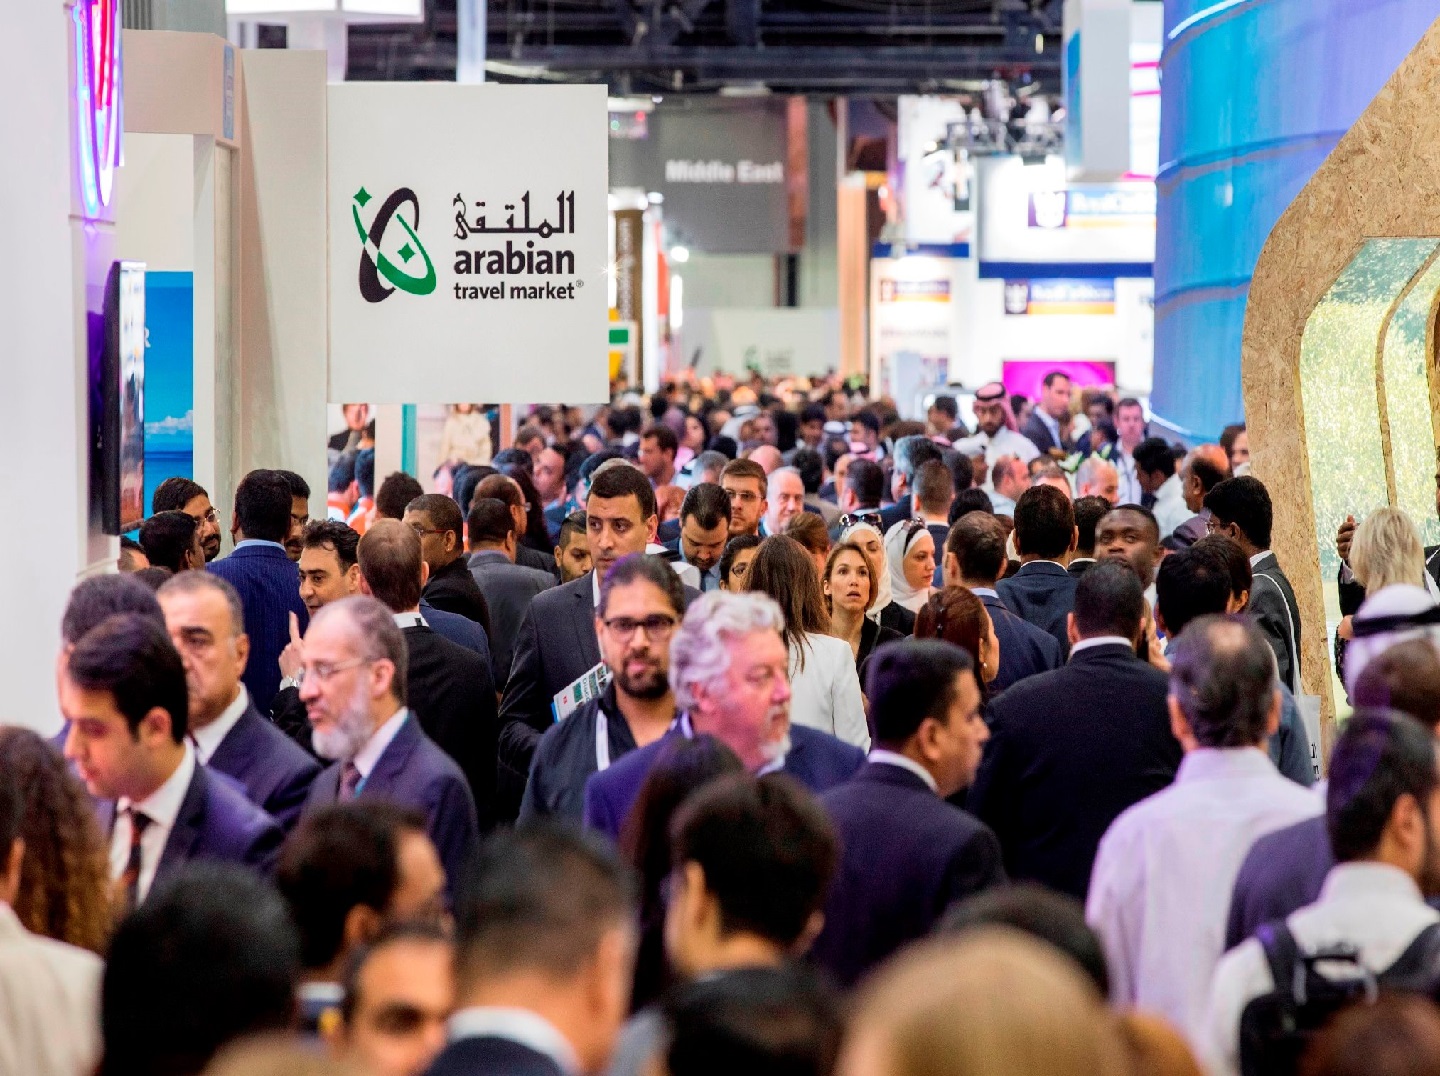 معرض سوق السفر العربي ينطلق غداً الأحد في دبي